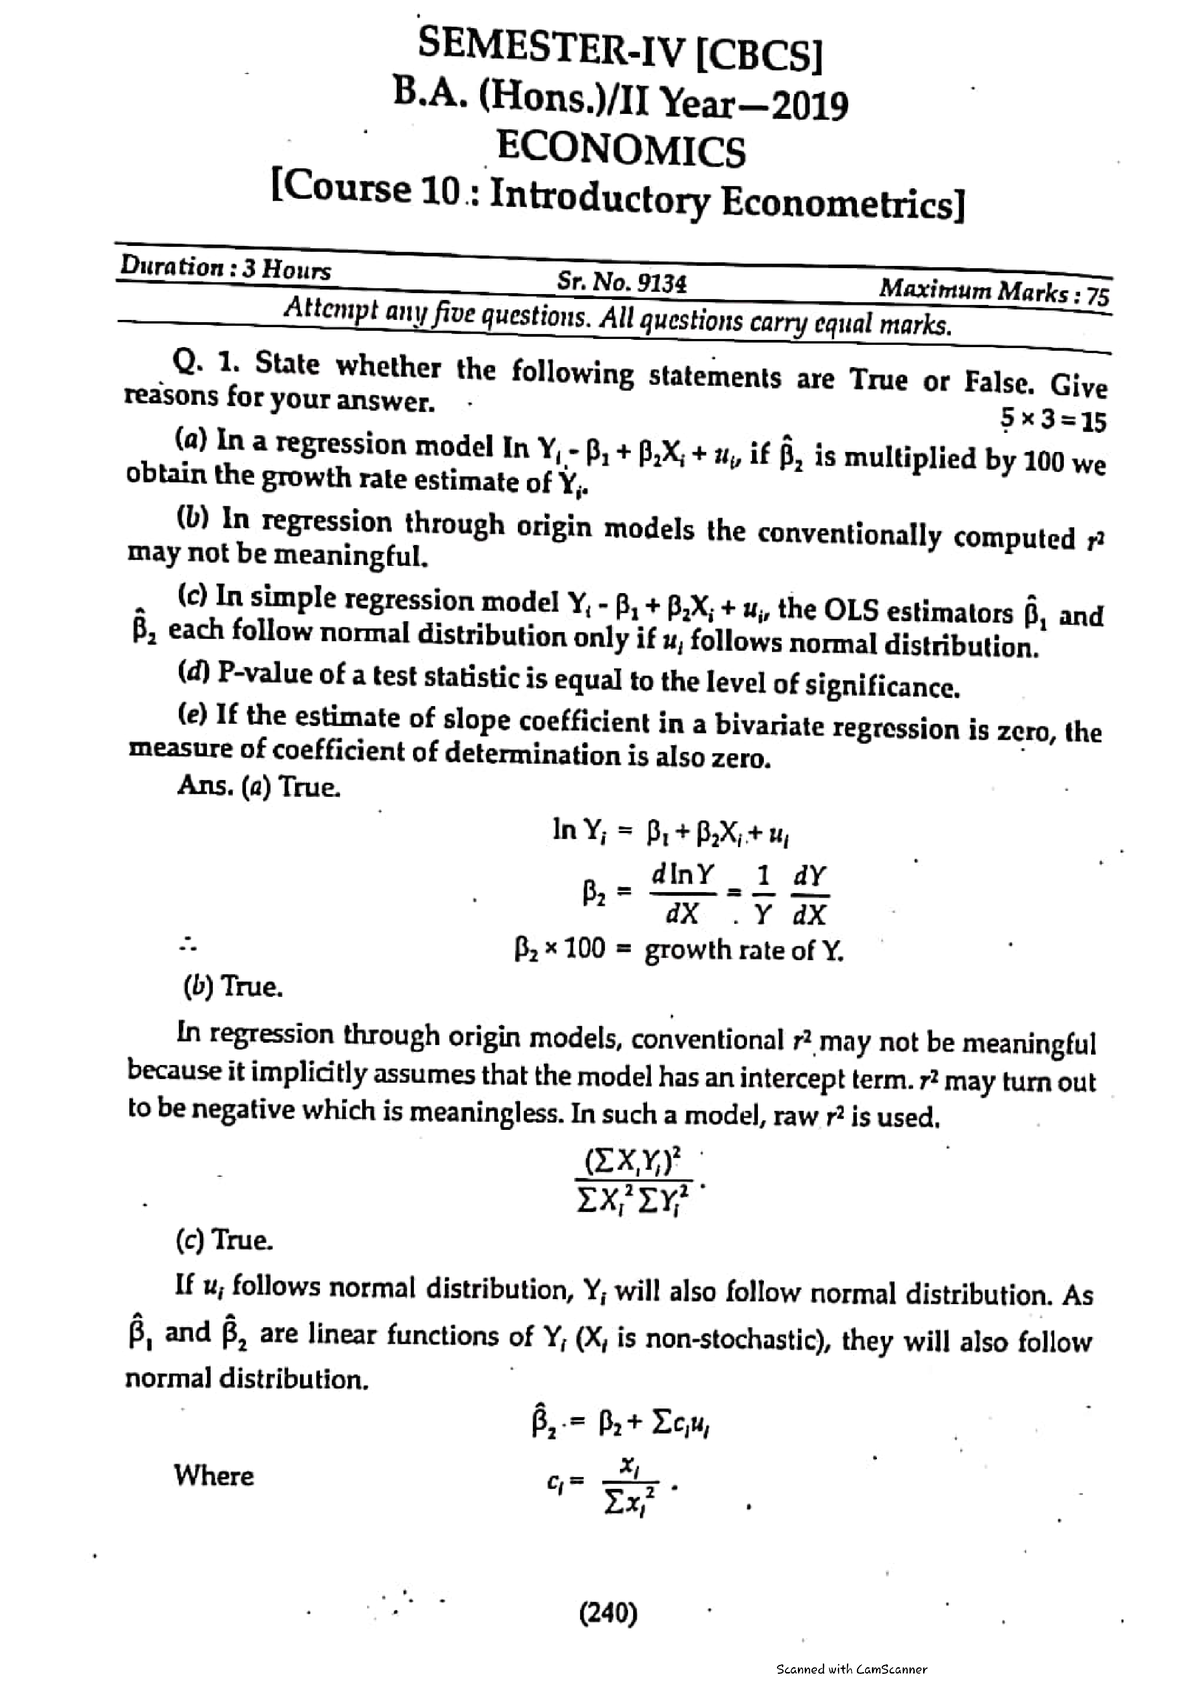 econometrics term paper example